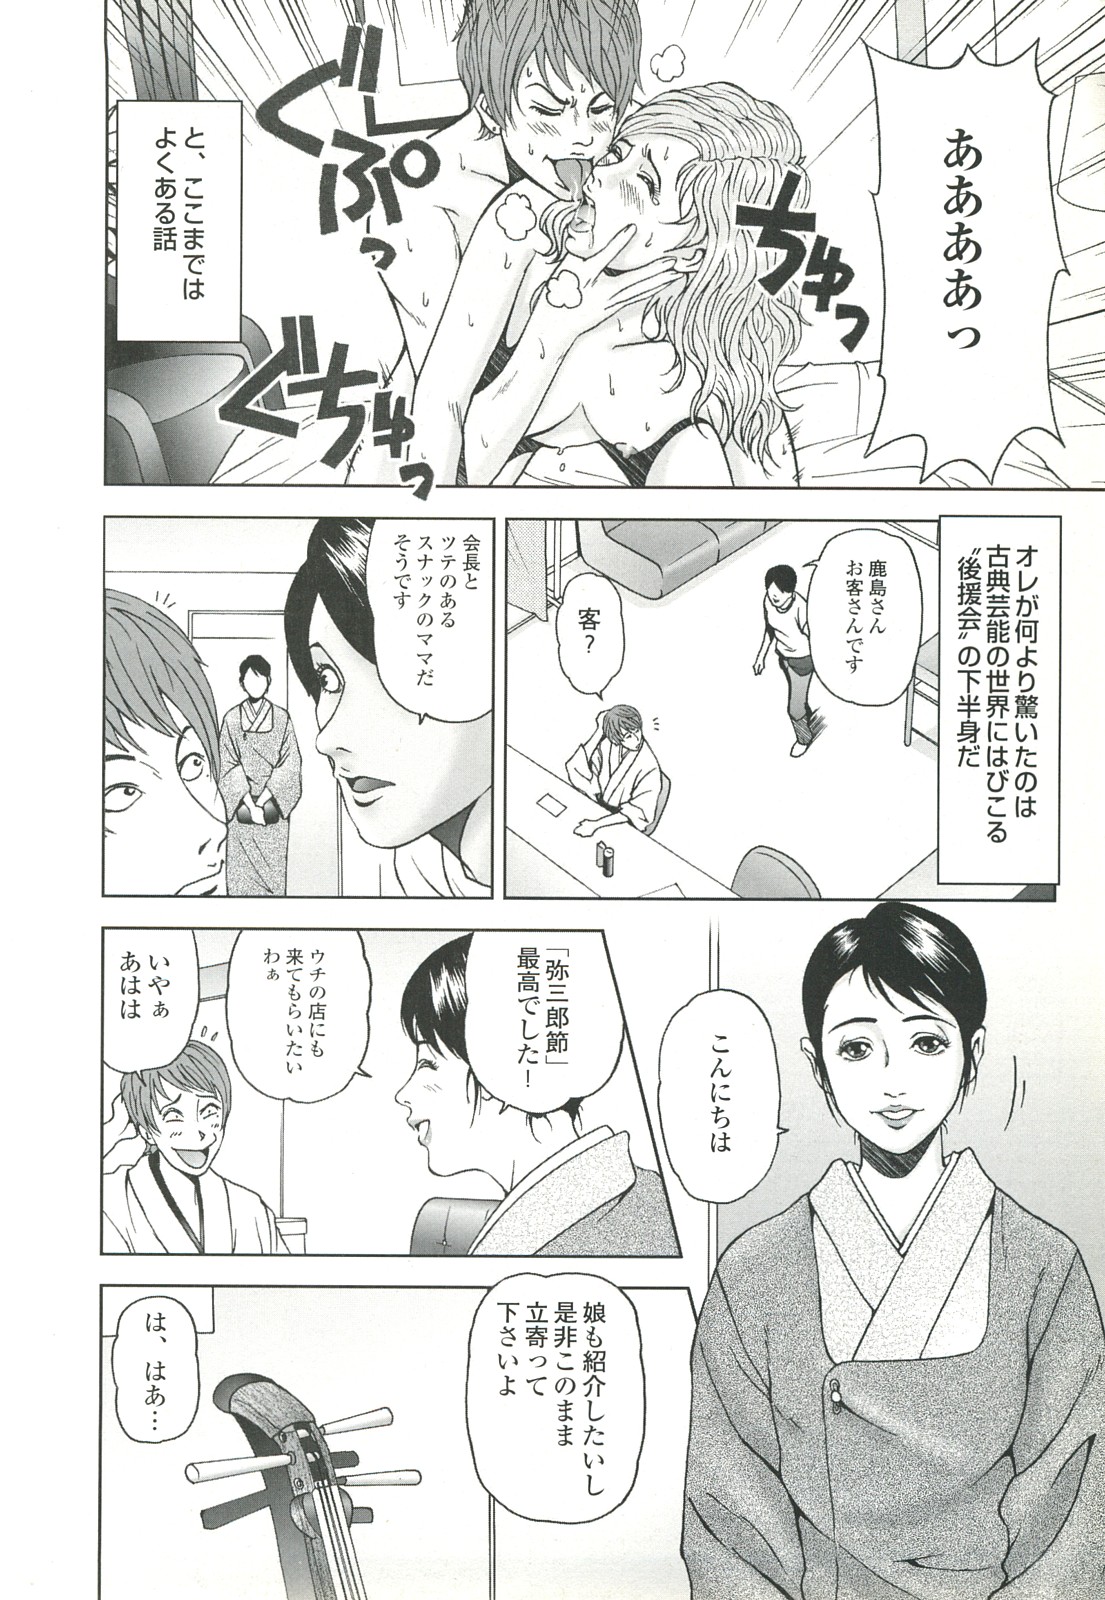 コミック裏モノJAPAN Vol.18 今井のりたつスペシャル号 